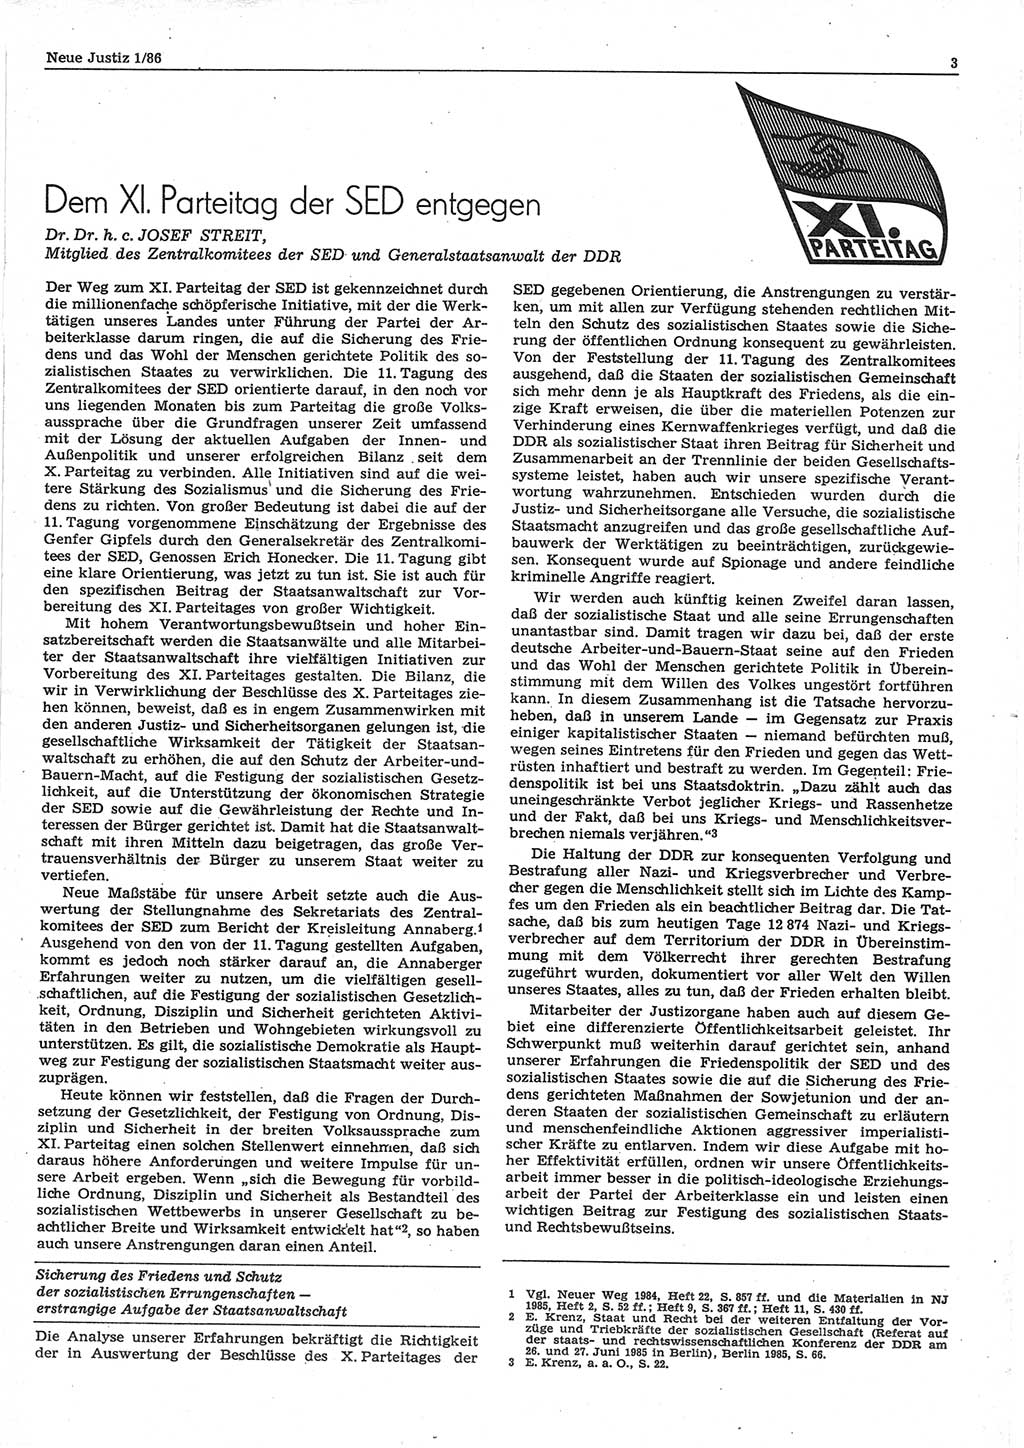 Neue Justiz (NJ), Zeitschrift für sozialistisches Recht und Gesetzlichkeit [Deutsche Demokratische Republik (DDR)], 40. Jahrgang 1986, Seite 3 (NJ DDR 1986, S. 3)